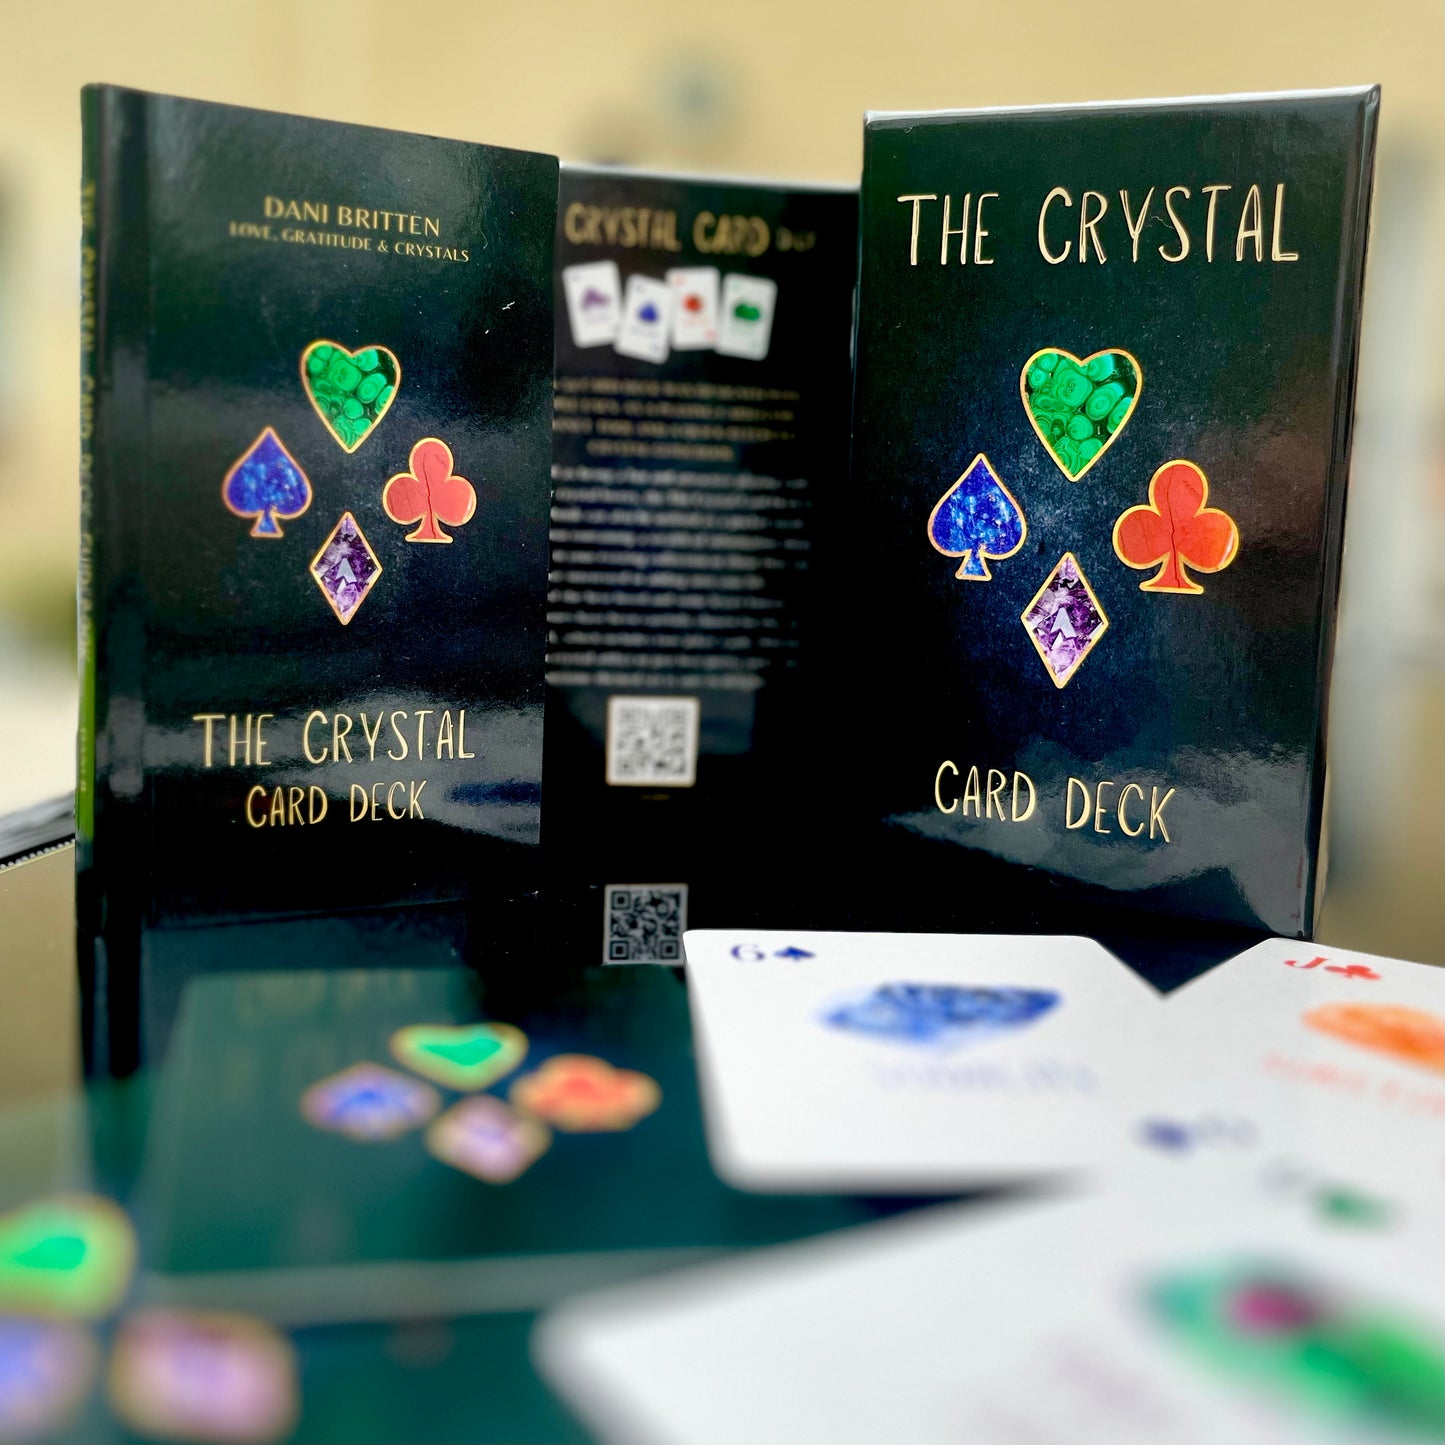 The Crystal Card Deck